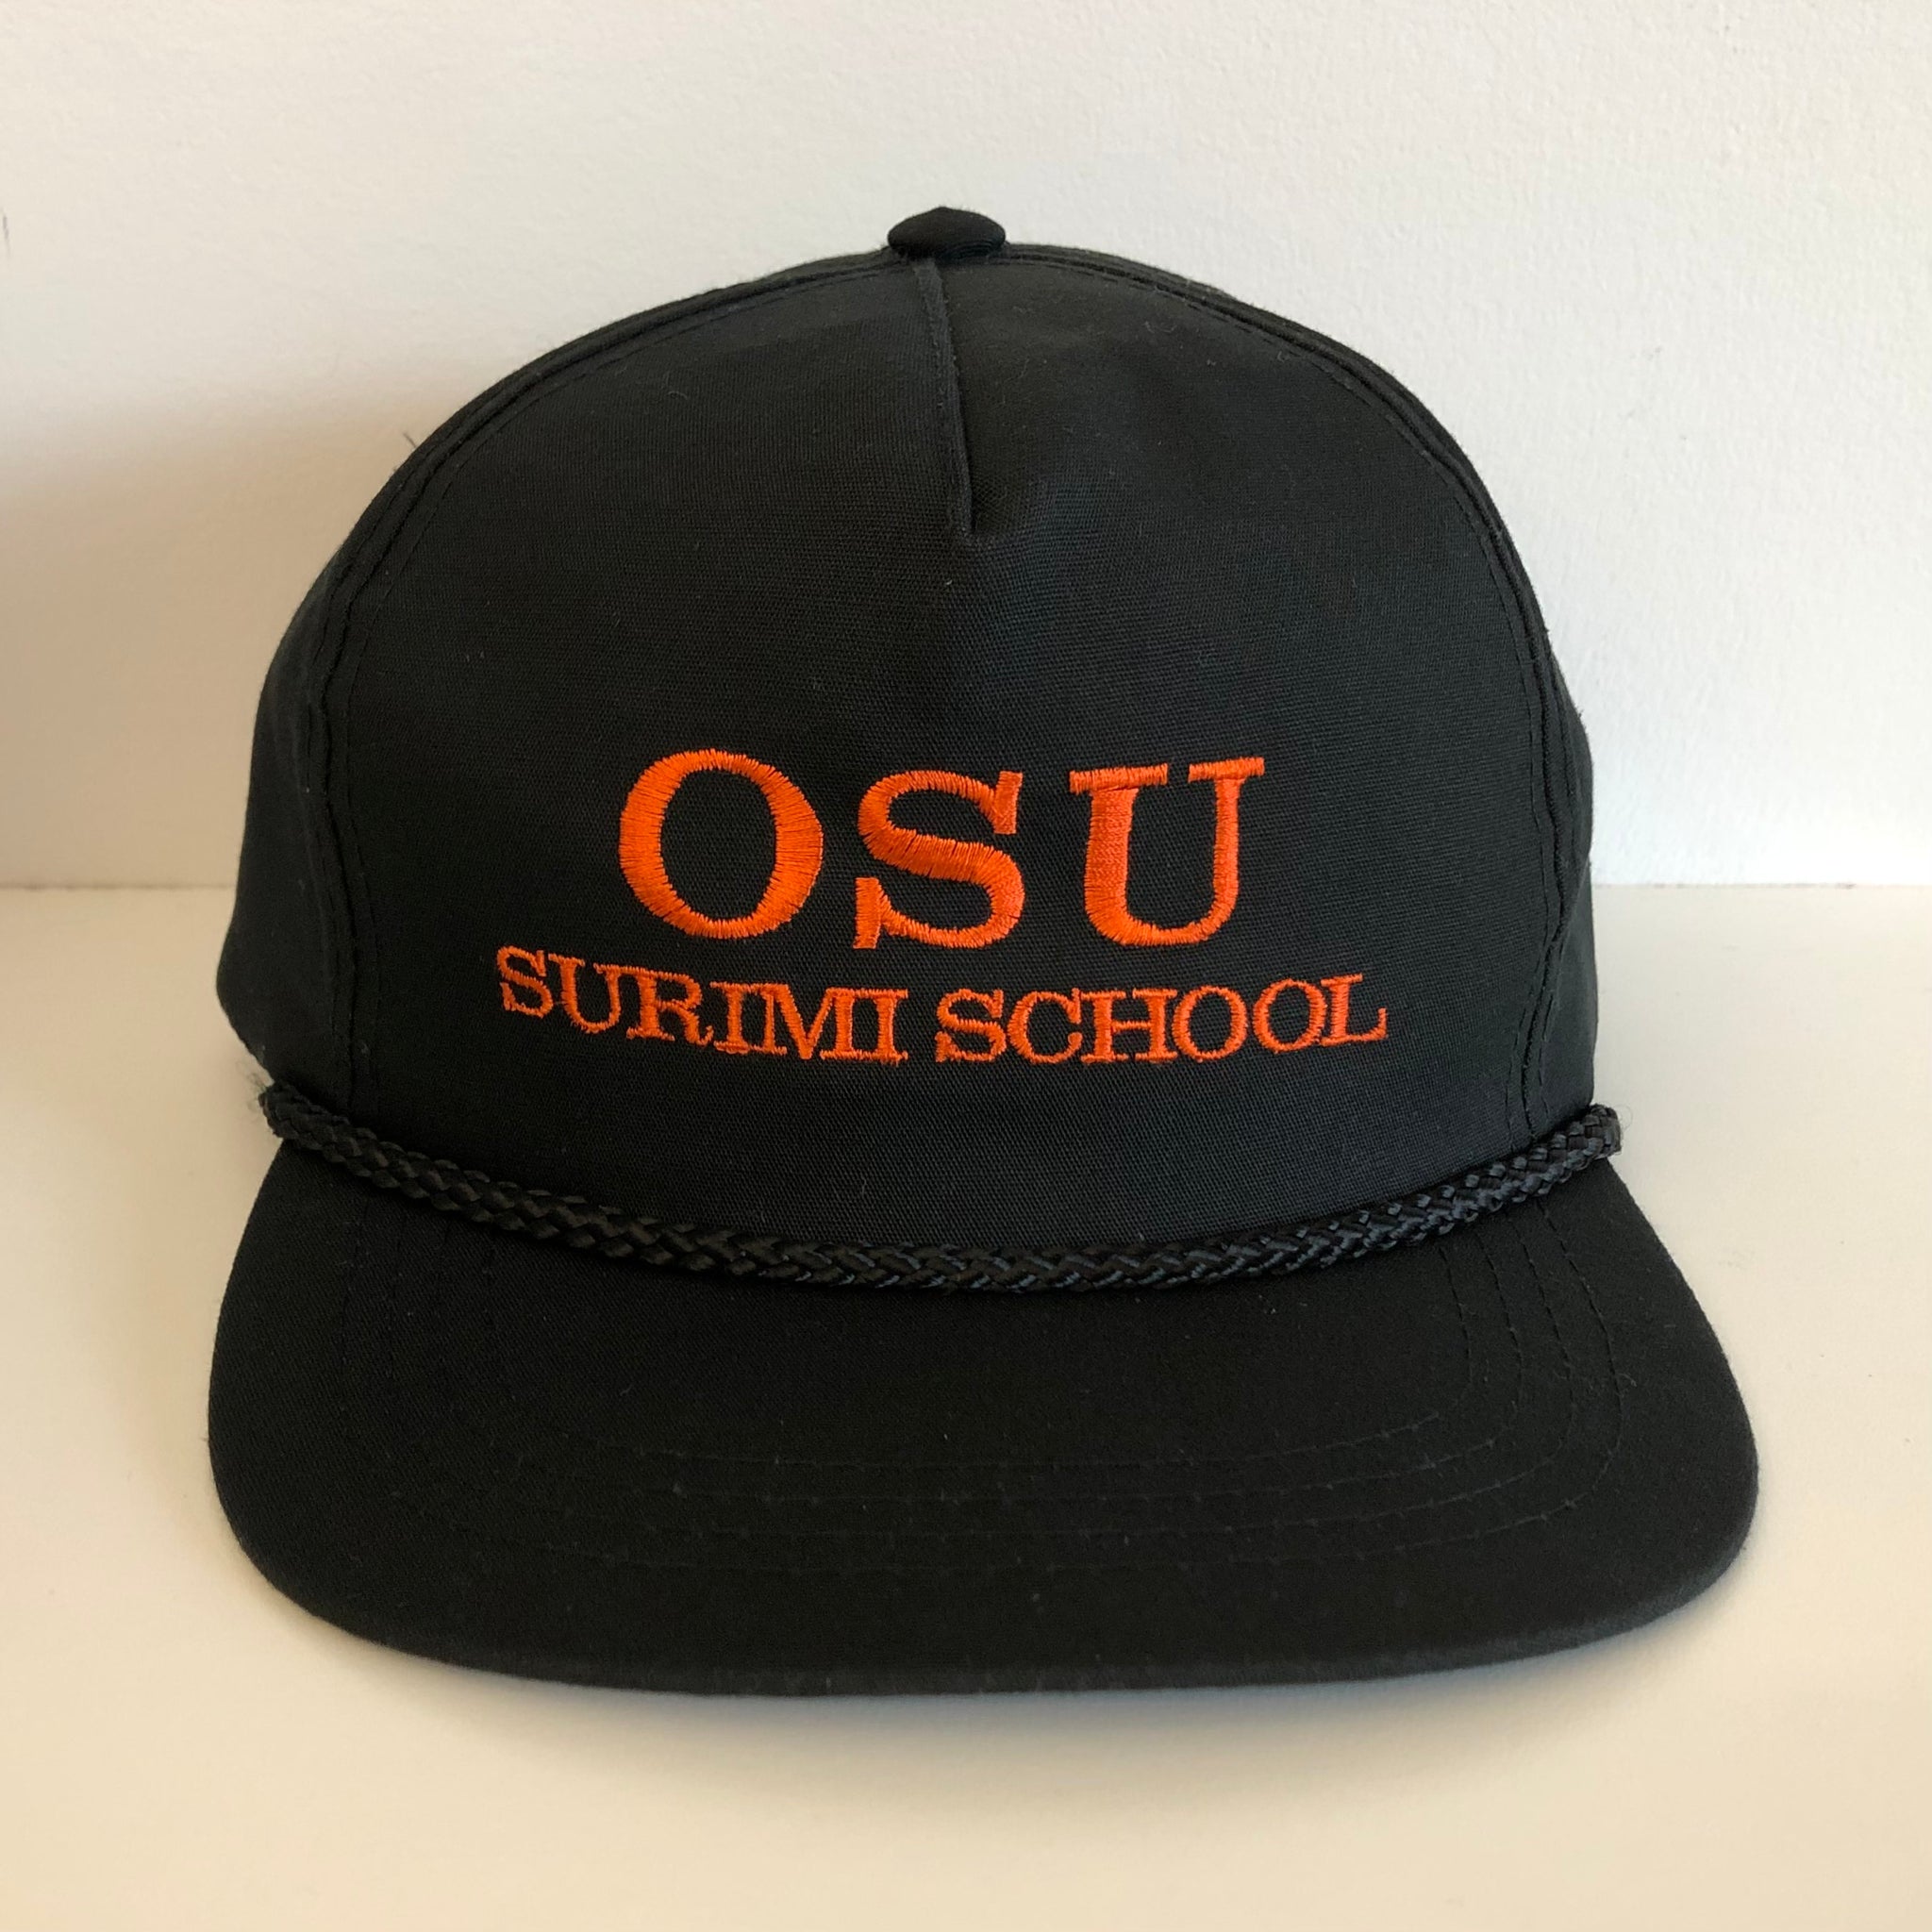 Vintage Oregon State OSU Beavers Surimi School Snapback Hat